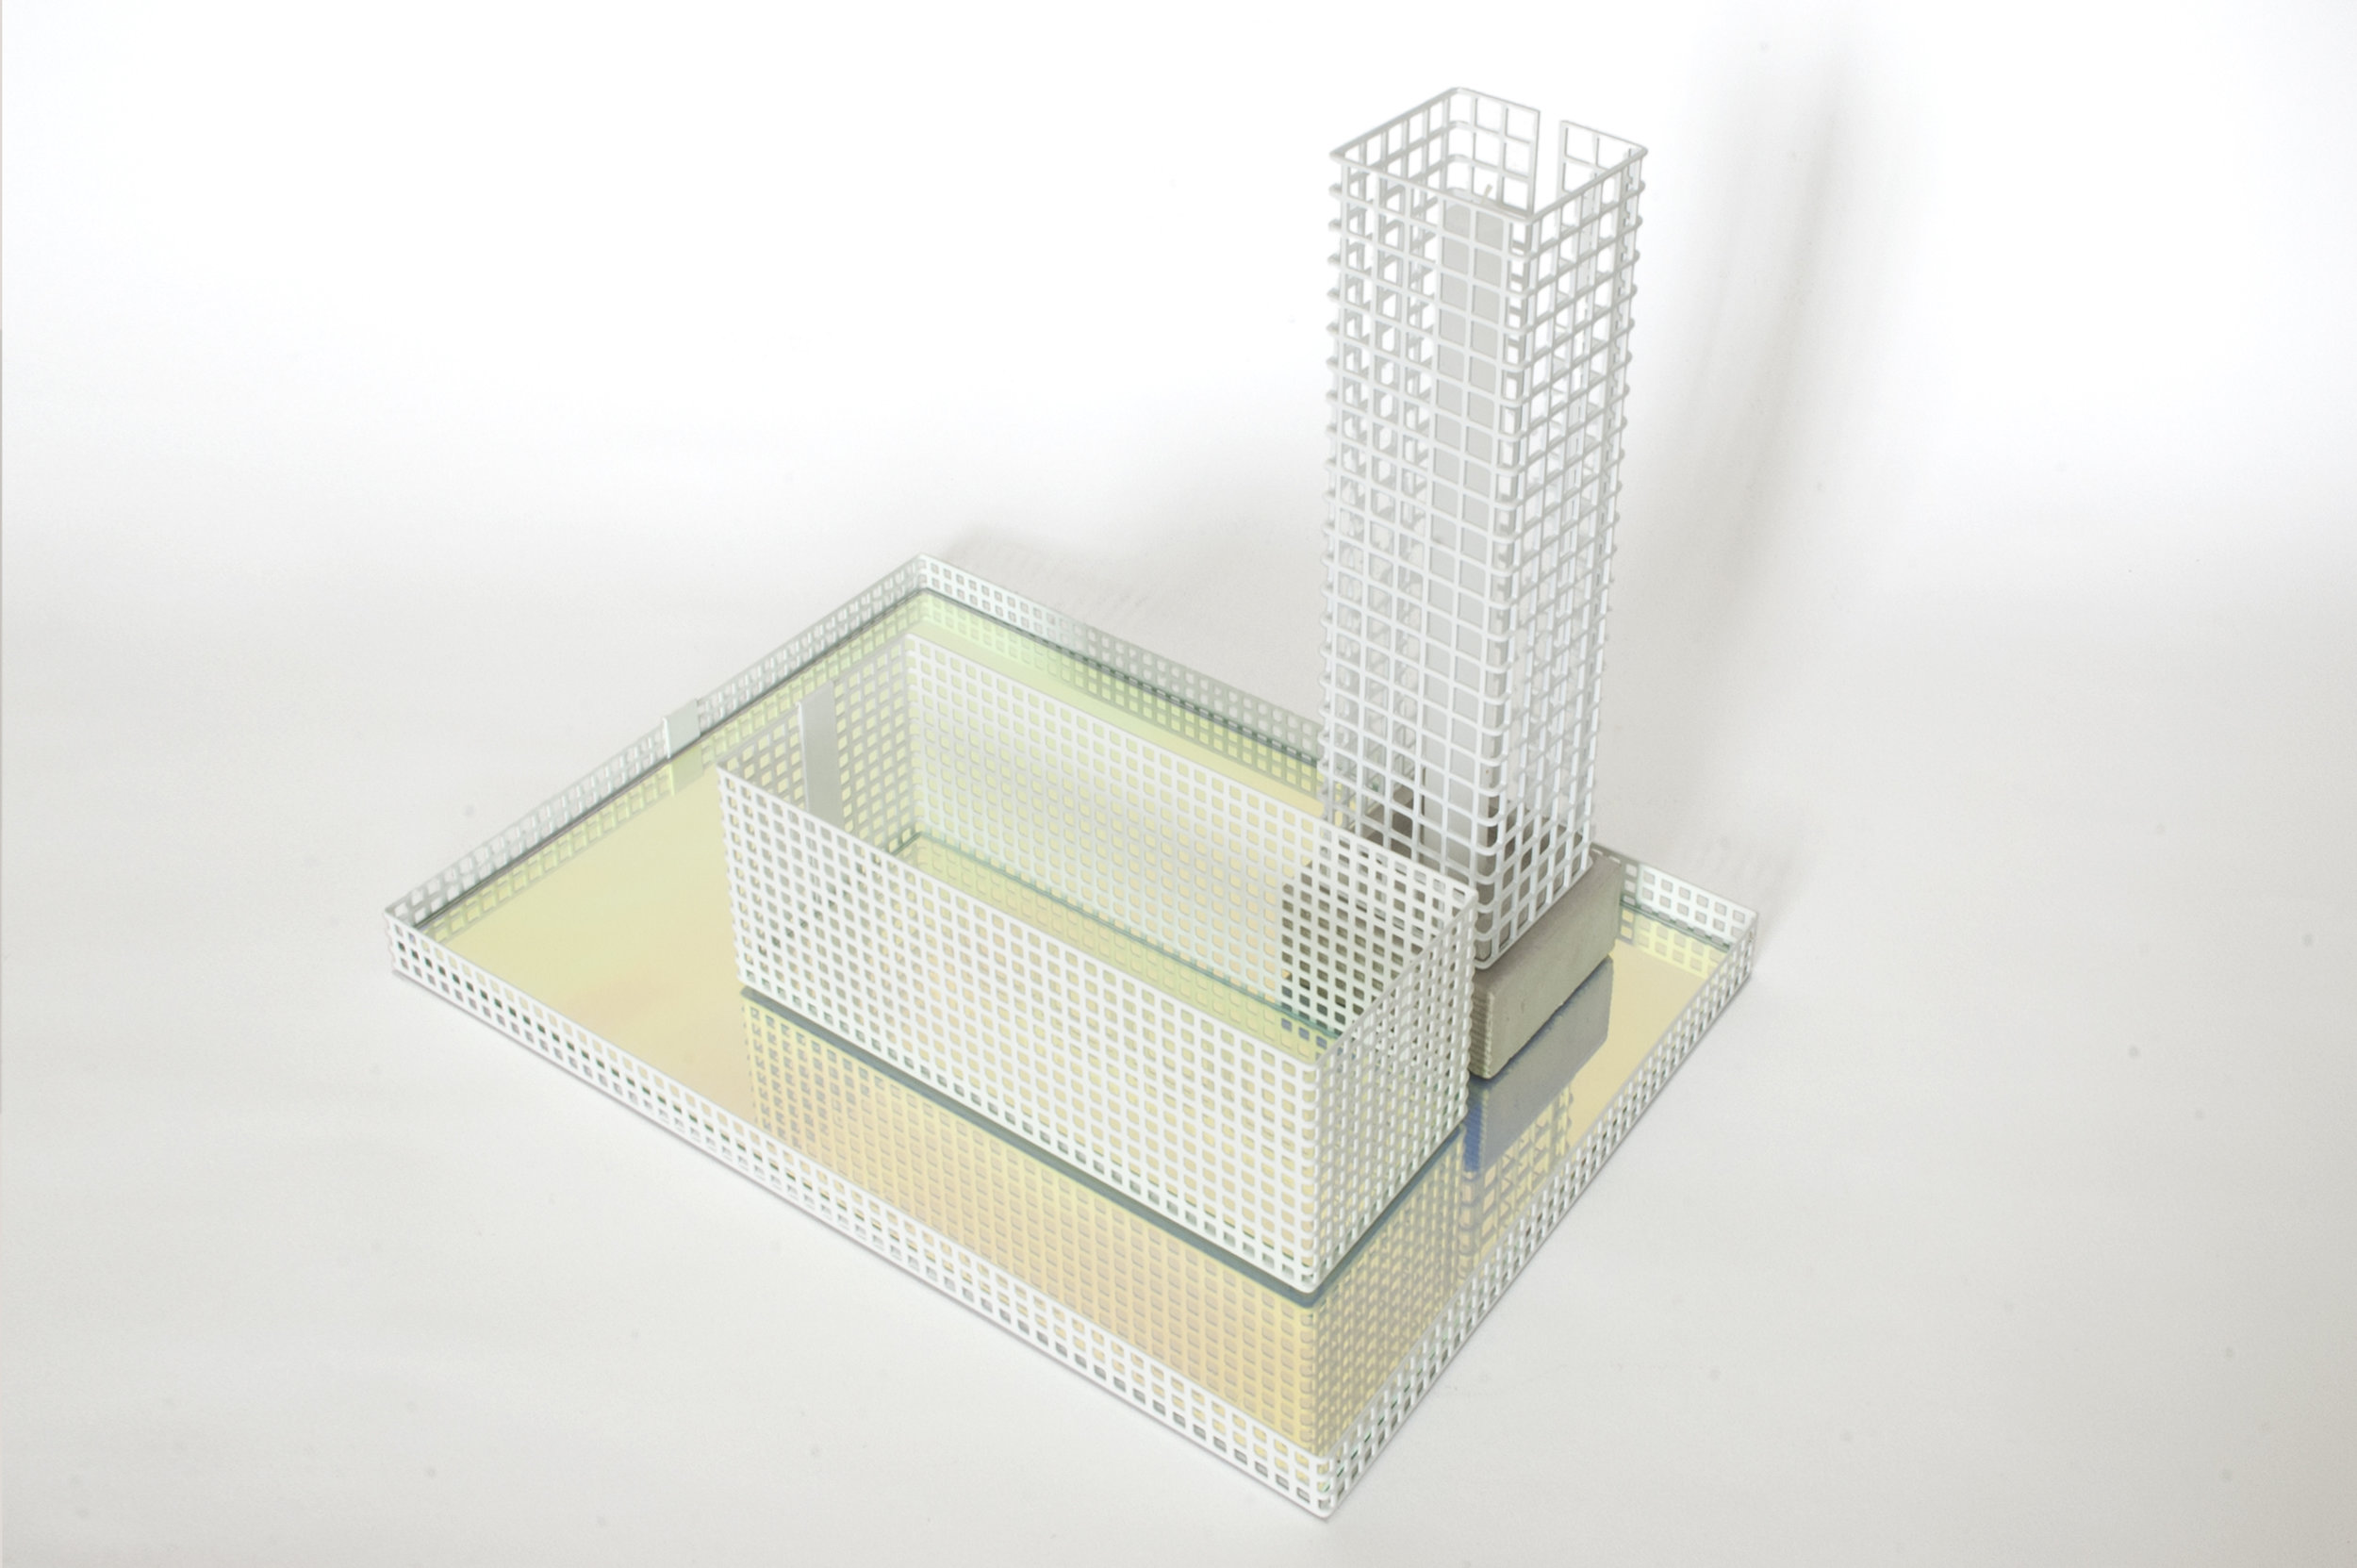 Table Architecture composition white - David Derksen Design.jpg